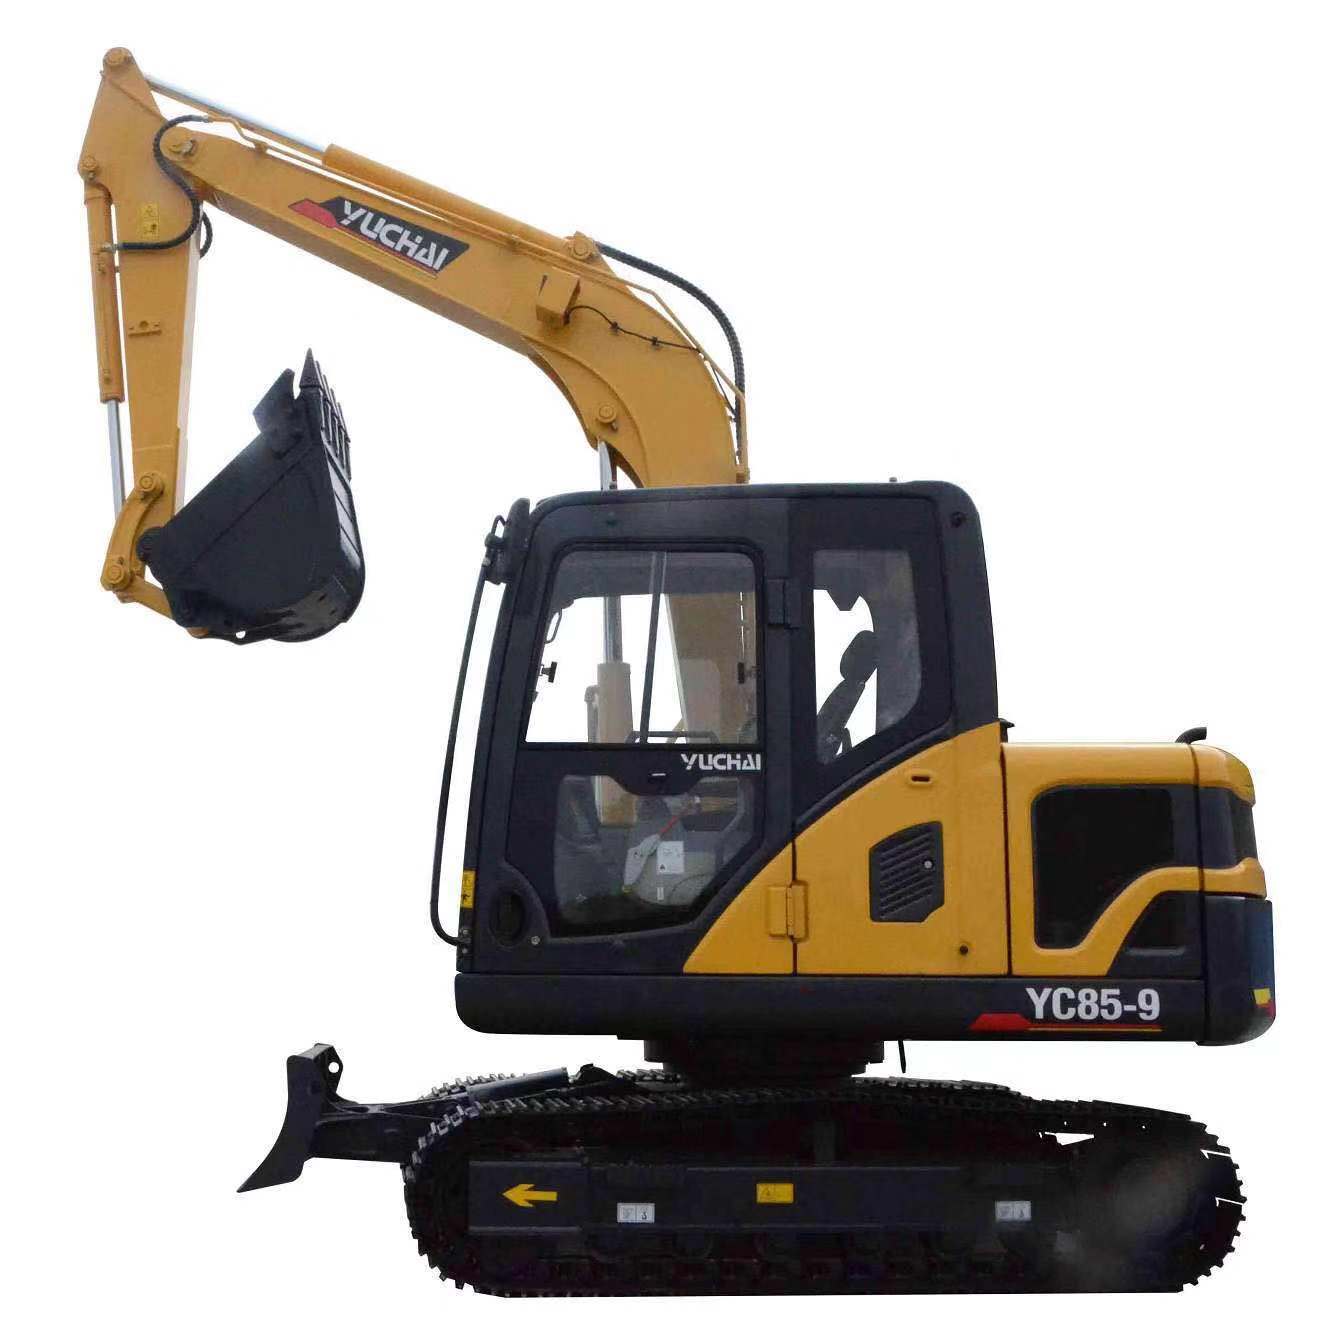 
                13.5t CE Excavator Yuchai Crawler Hydraulic Excavator Price
            